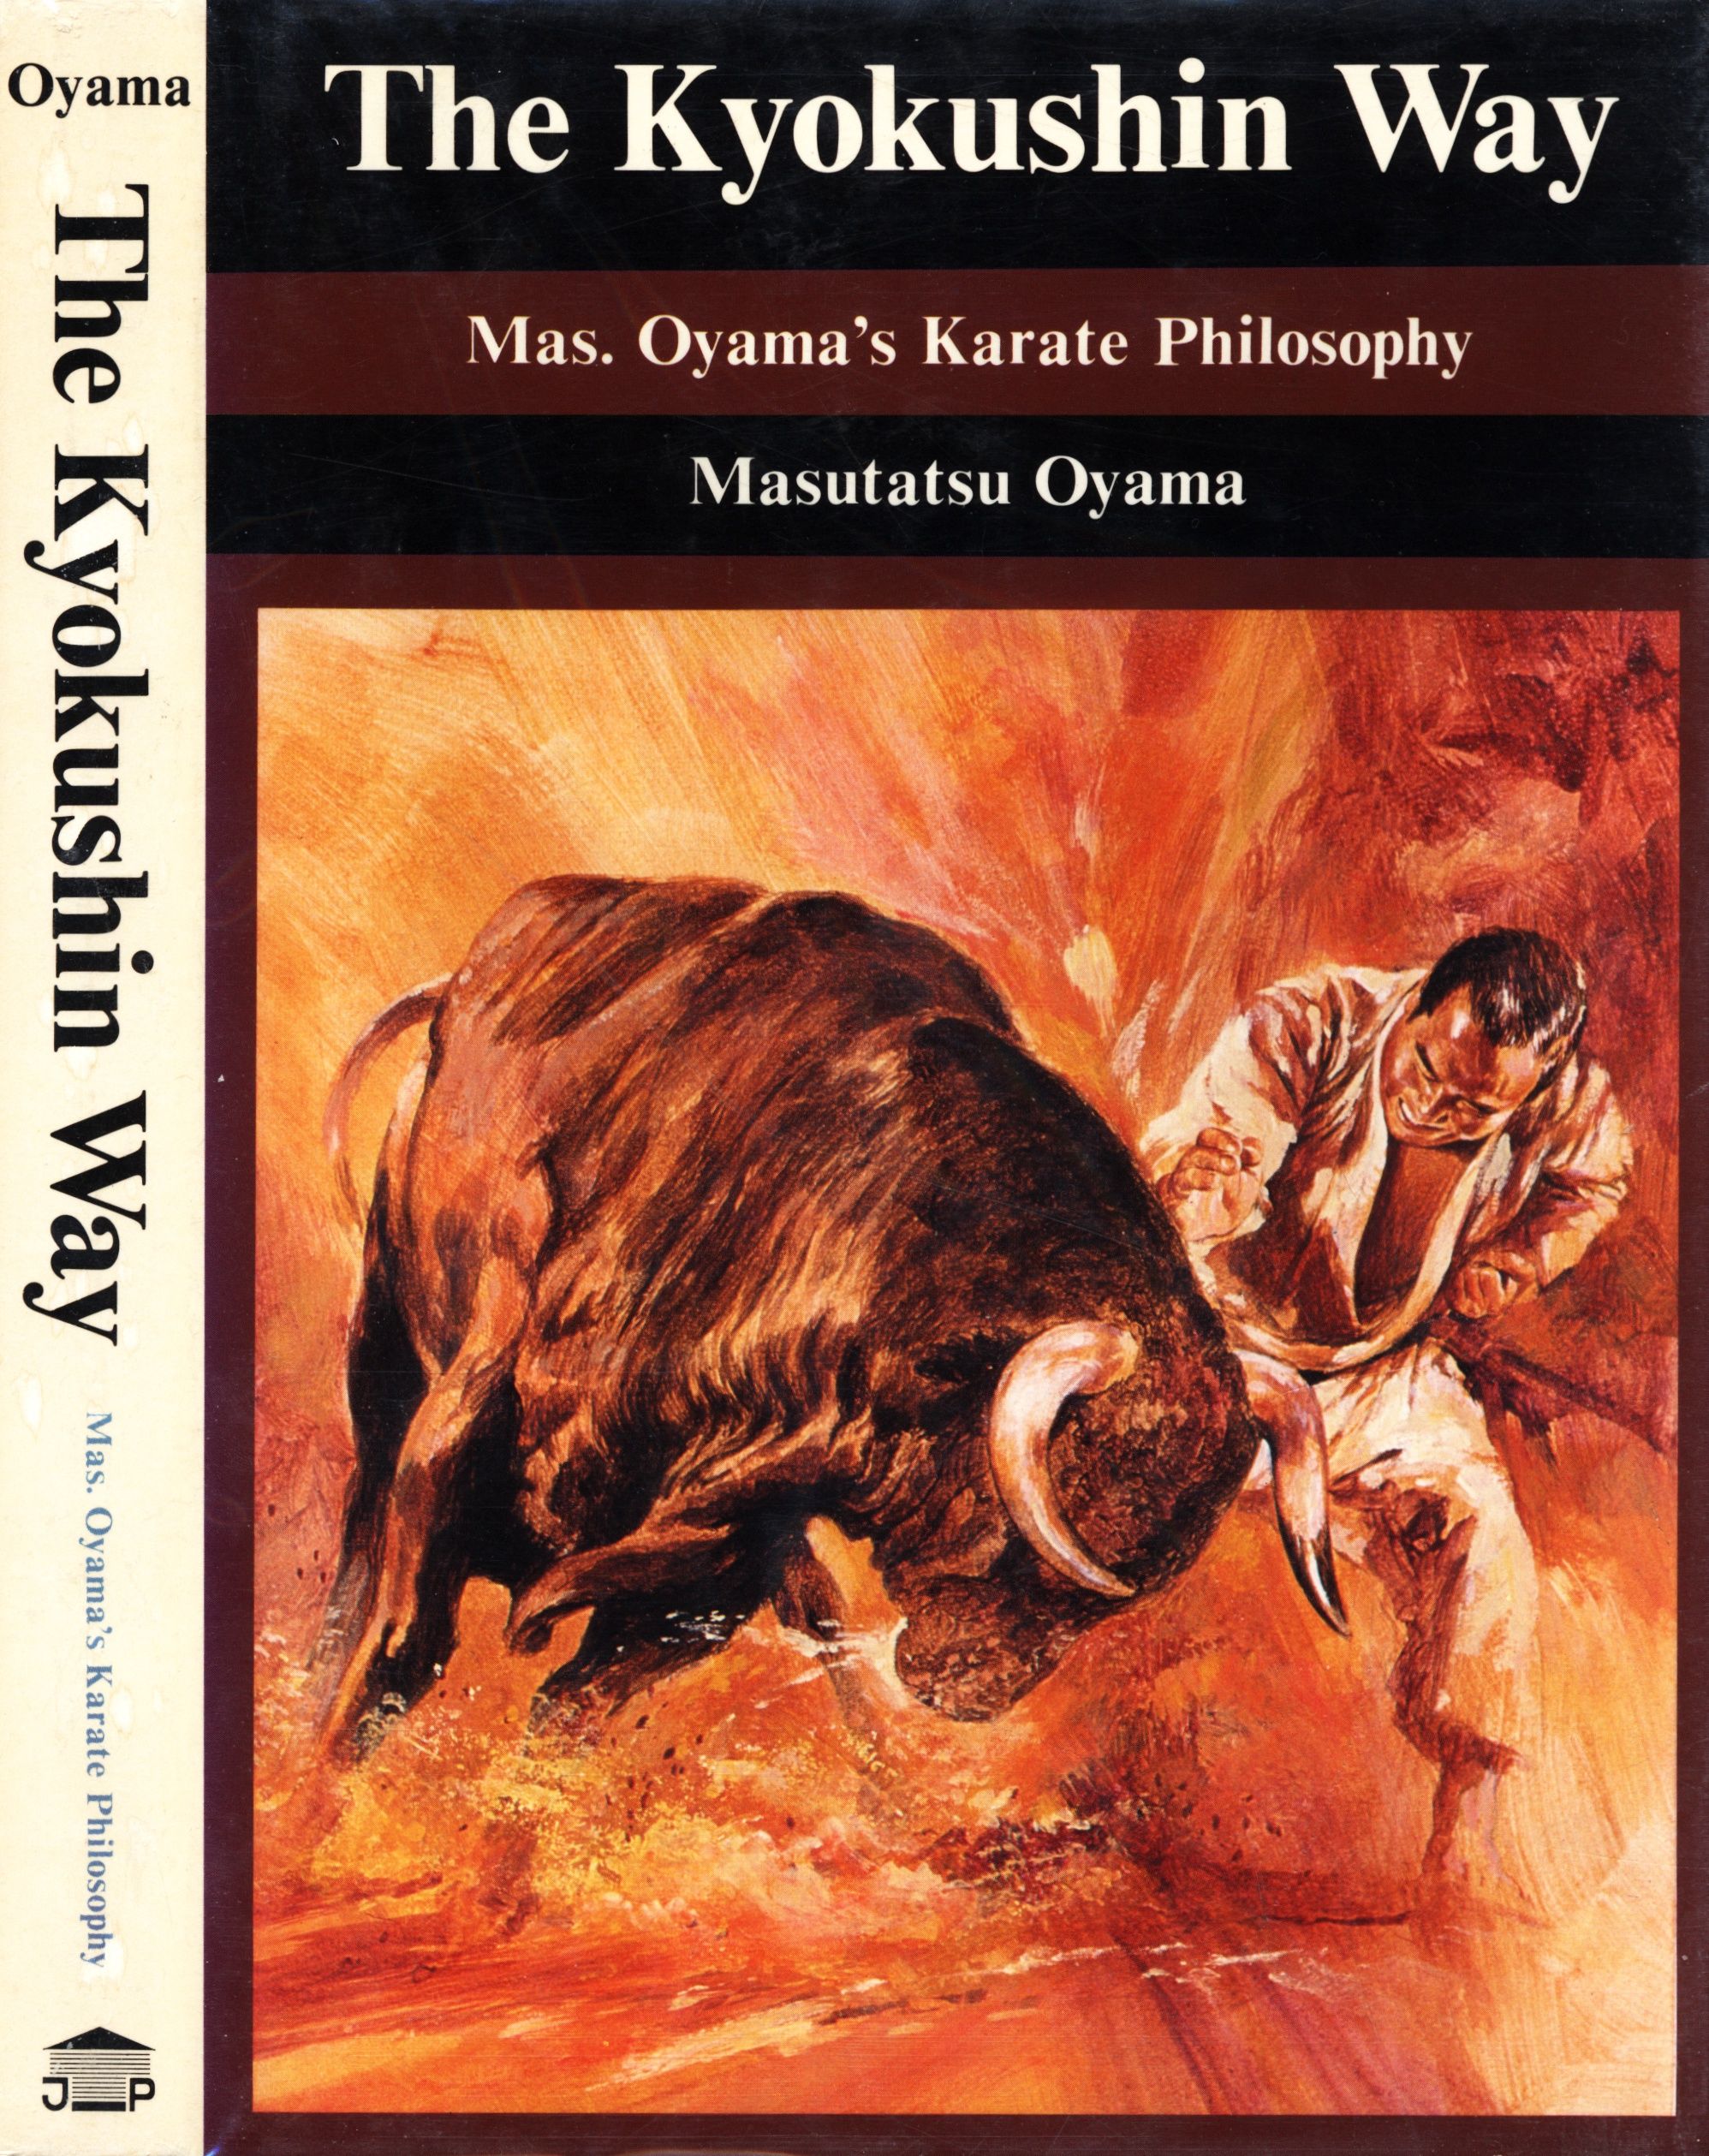 The Kyokushin way : Mas. Oyama's karate philosophy - Masutatsu Oyama